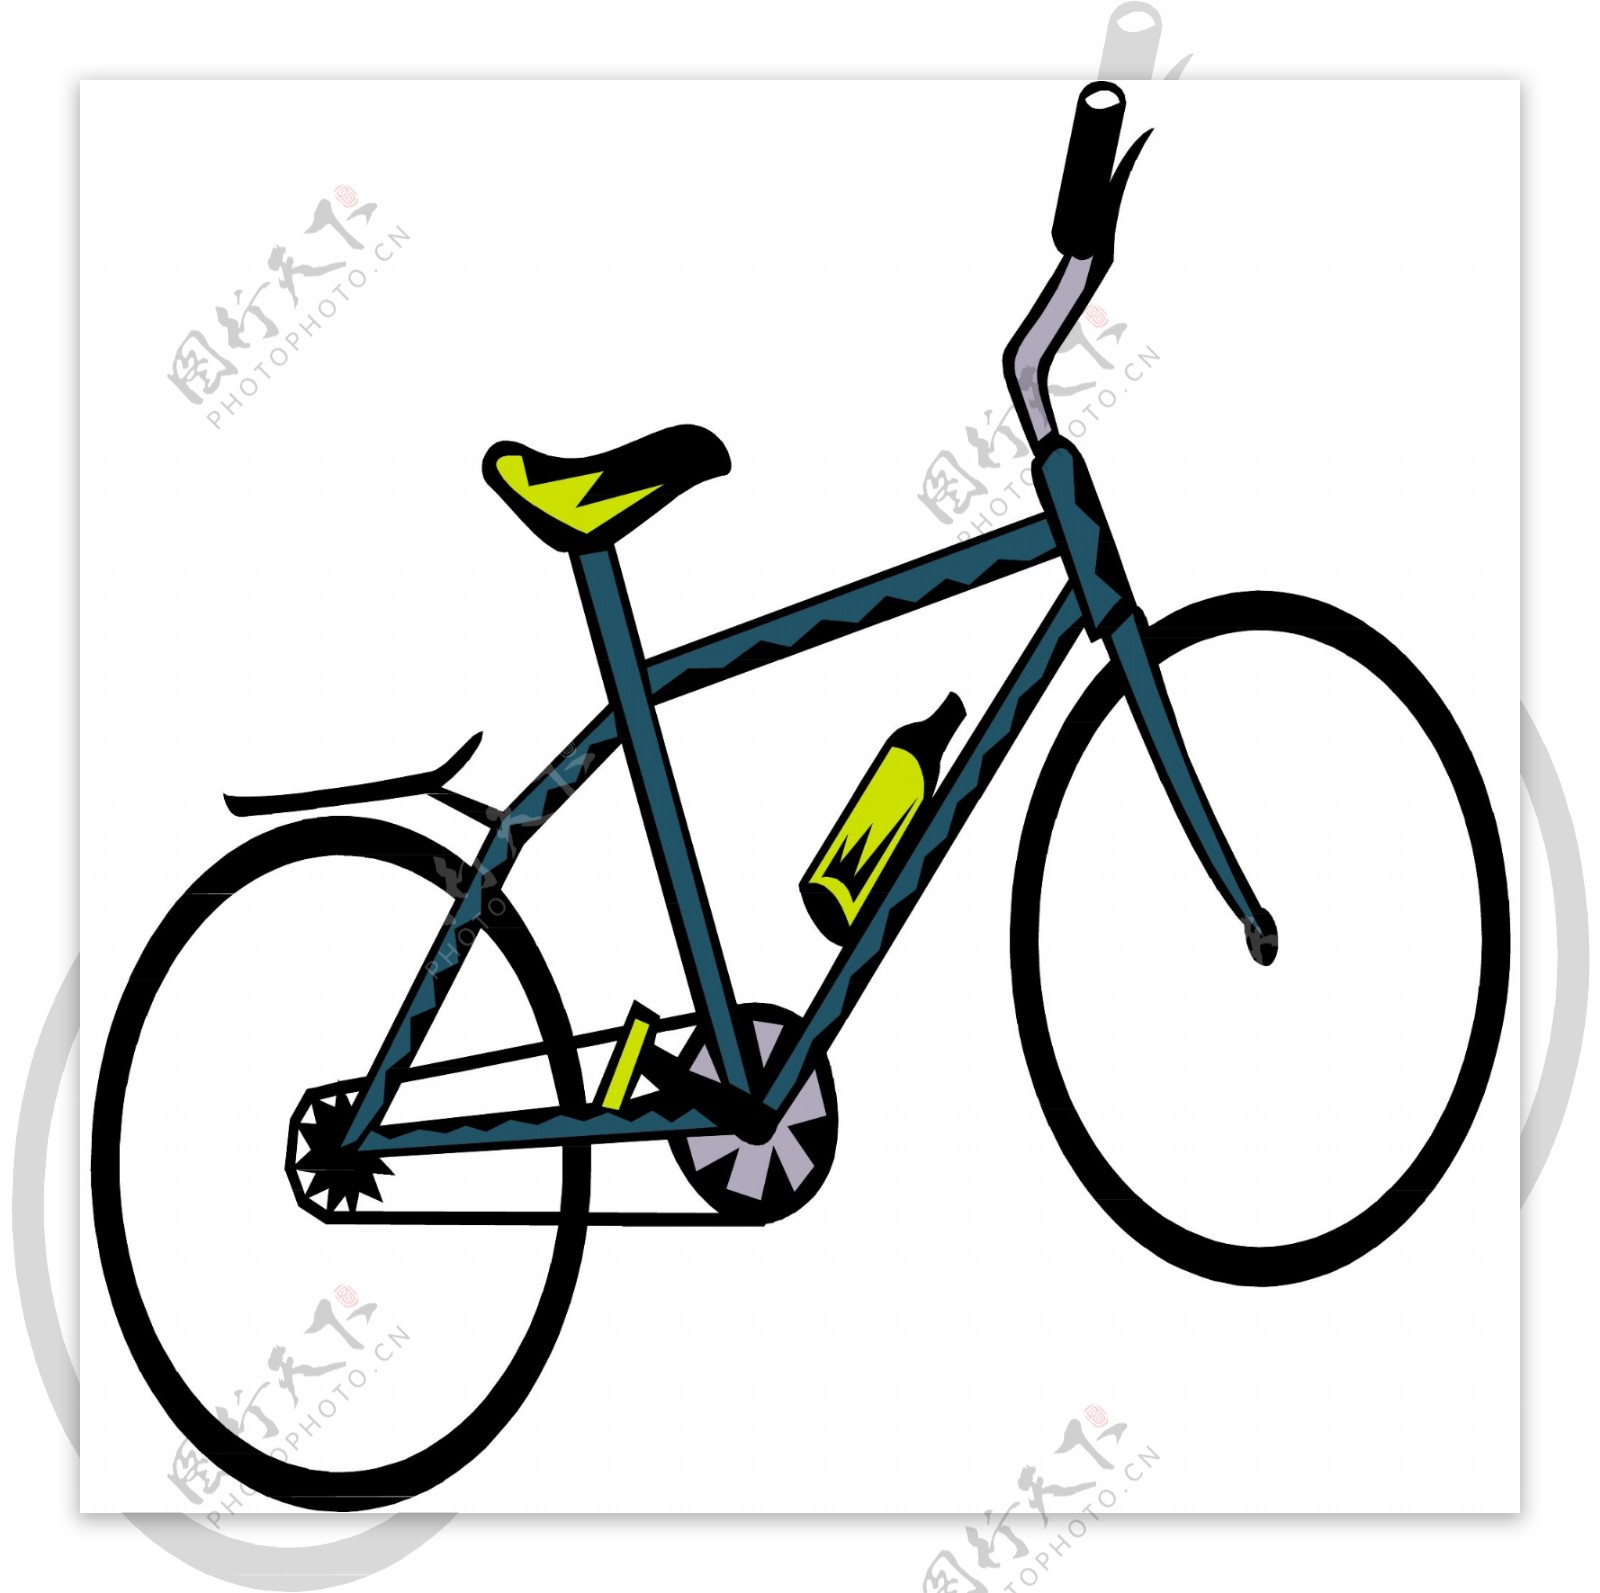 自行车交通工具矢量素材EPS格式0047